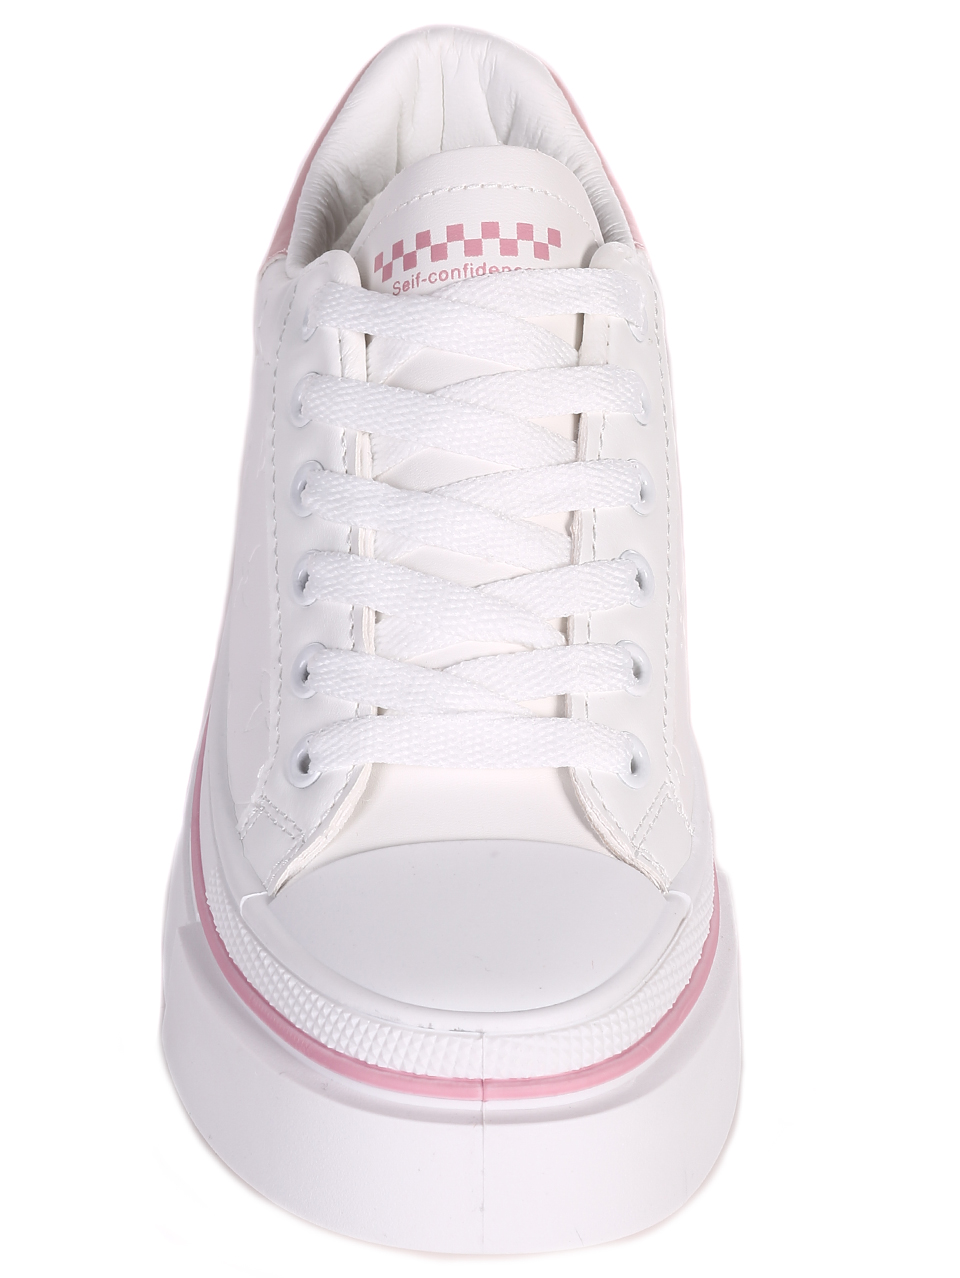 Ежедневни дамски кецове в бяло и розово 3U-23056 white/pink